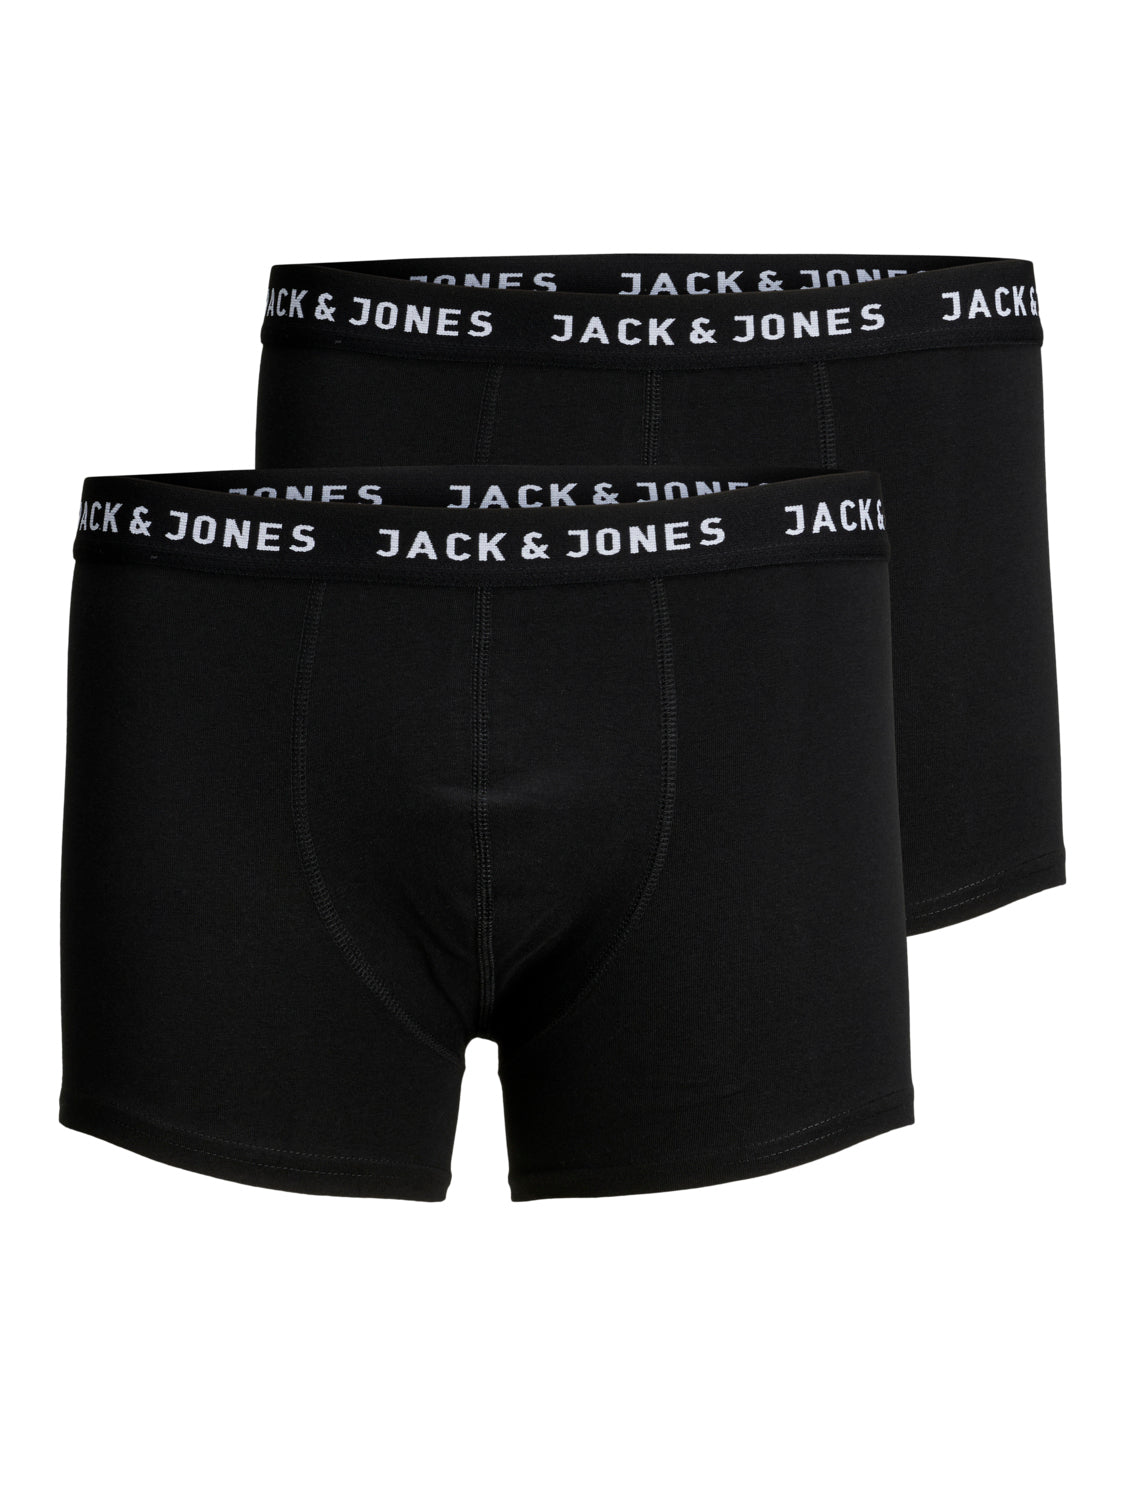 JACJON Trunks - black